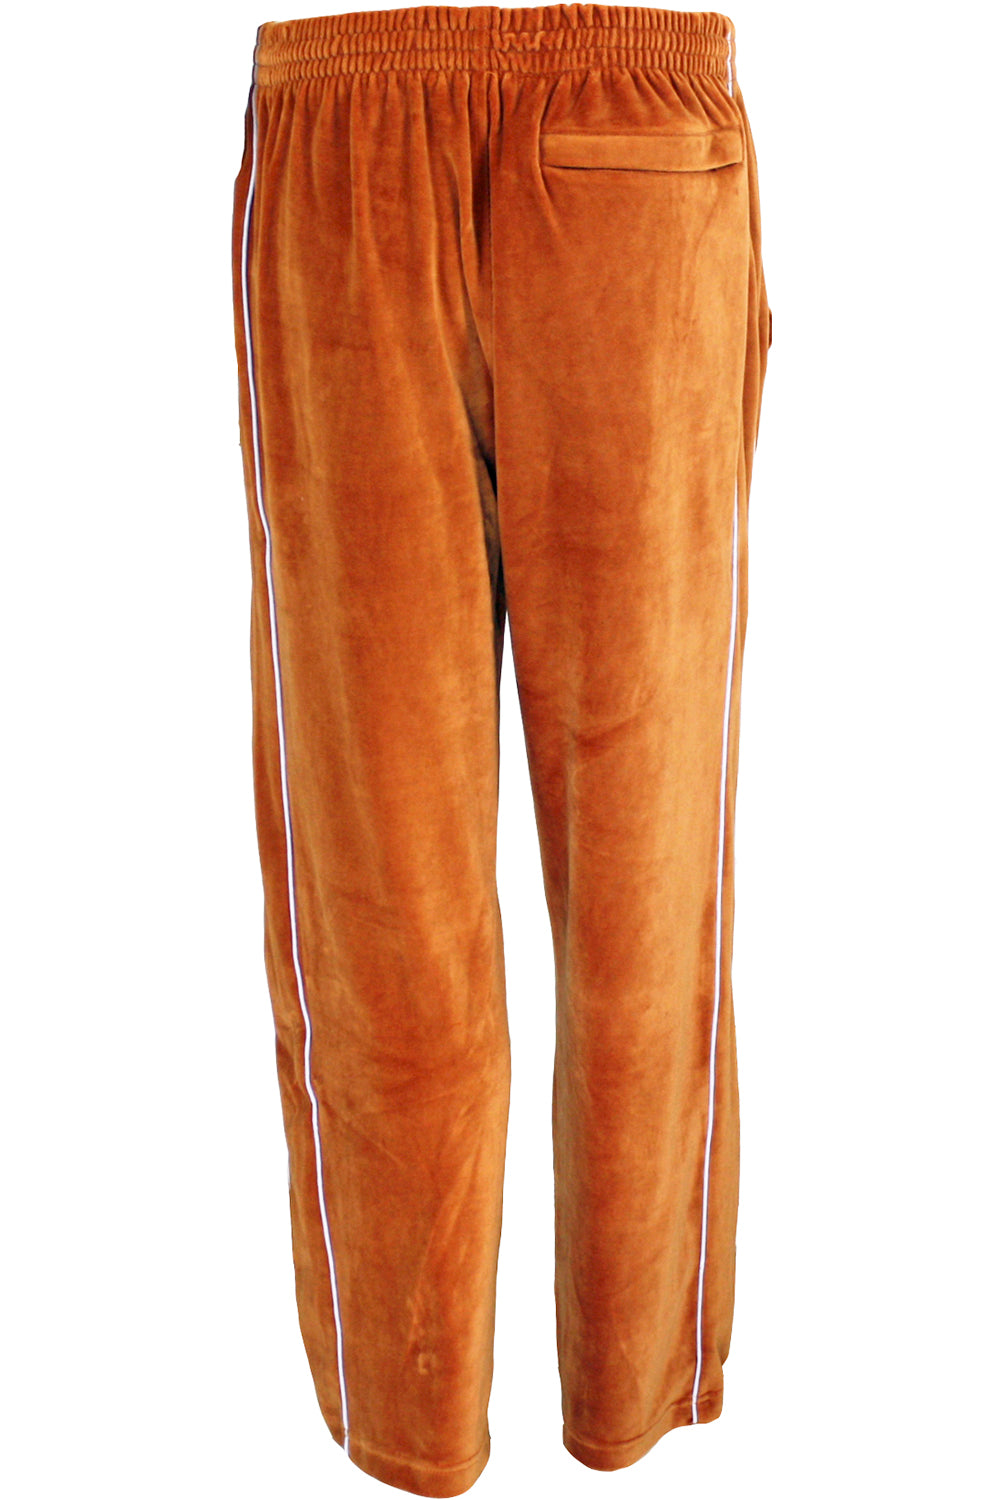 Nylon Tracksuit Shorts - Luxury Orange